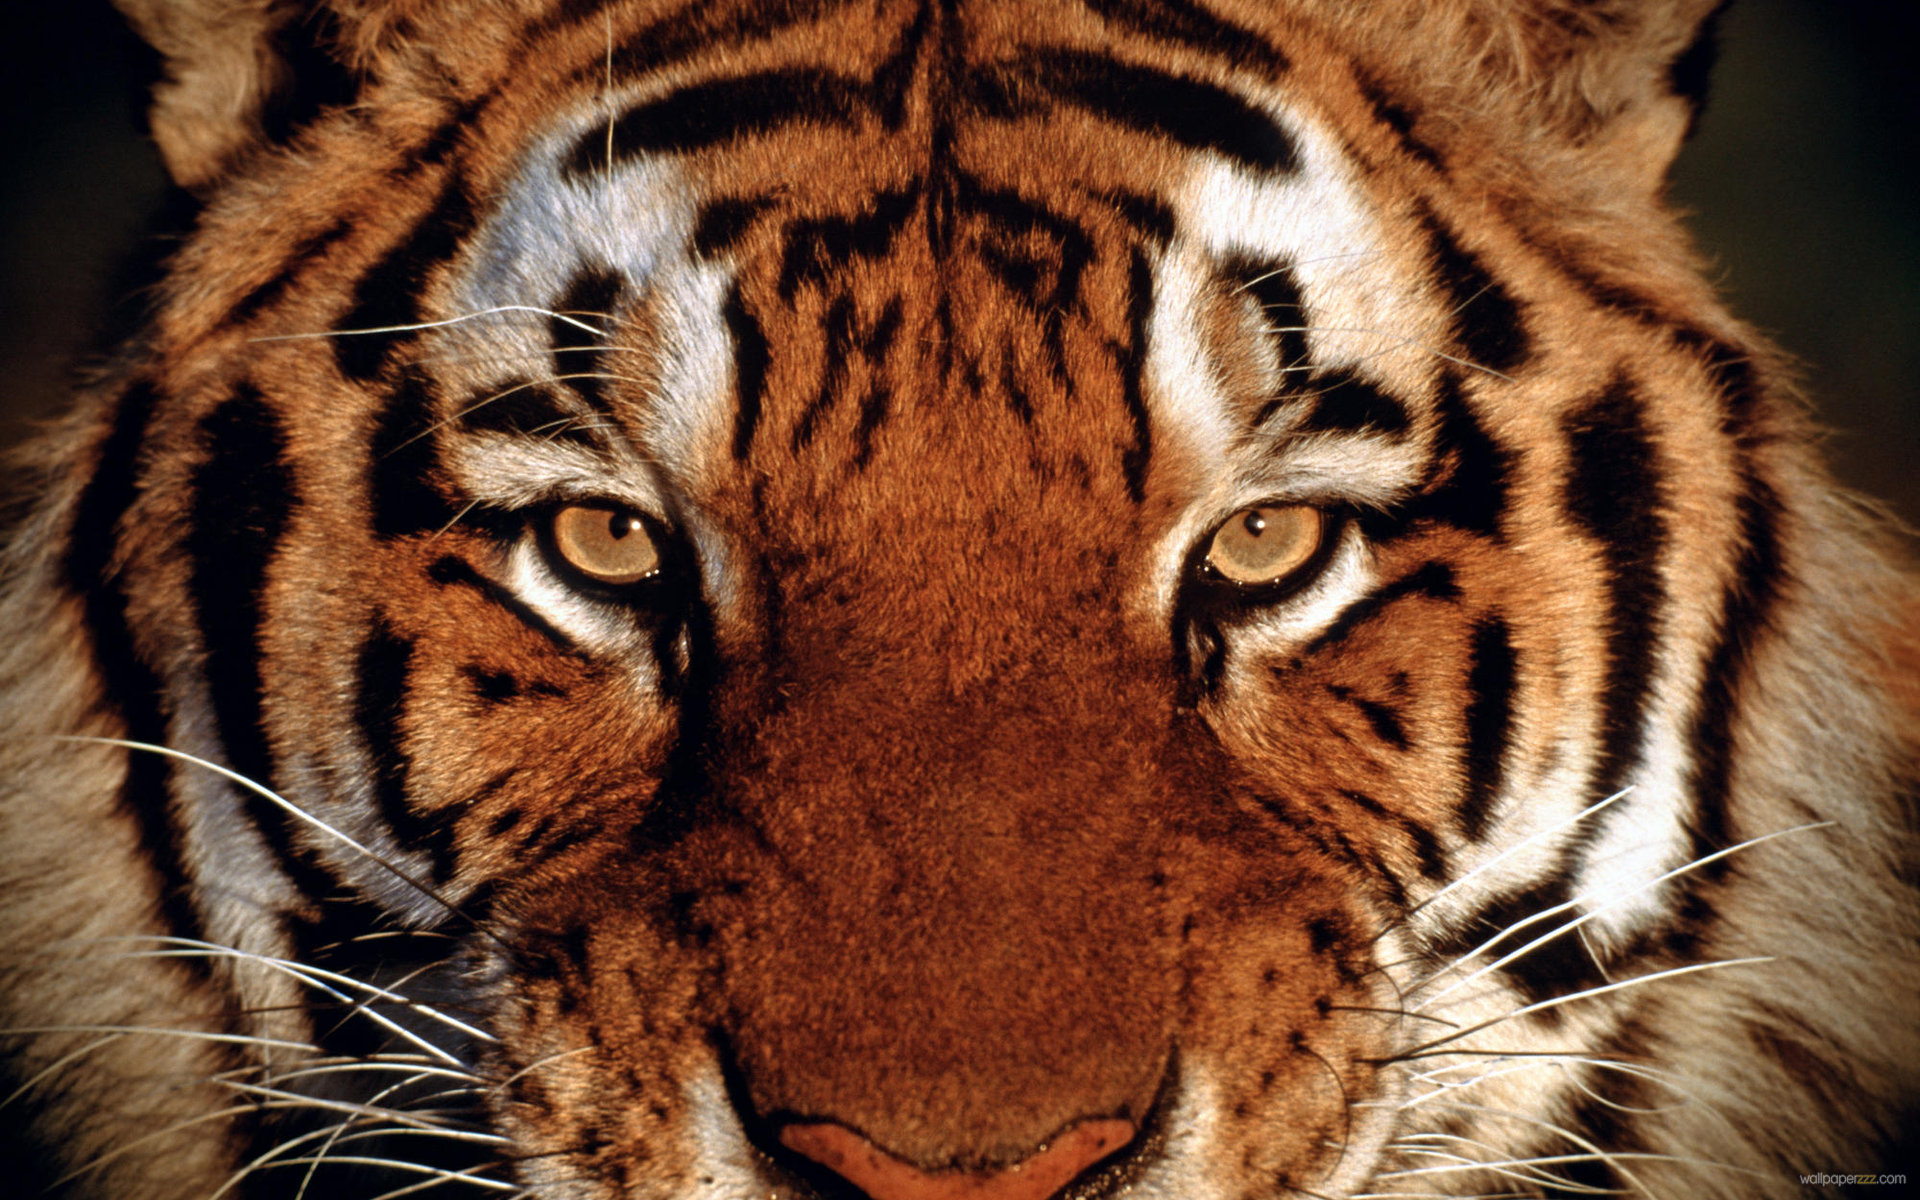 Tiger Face 30